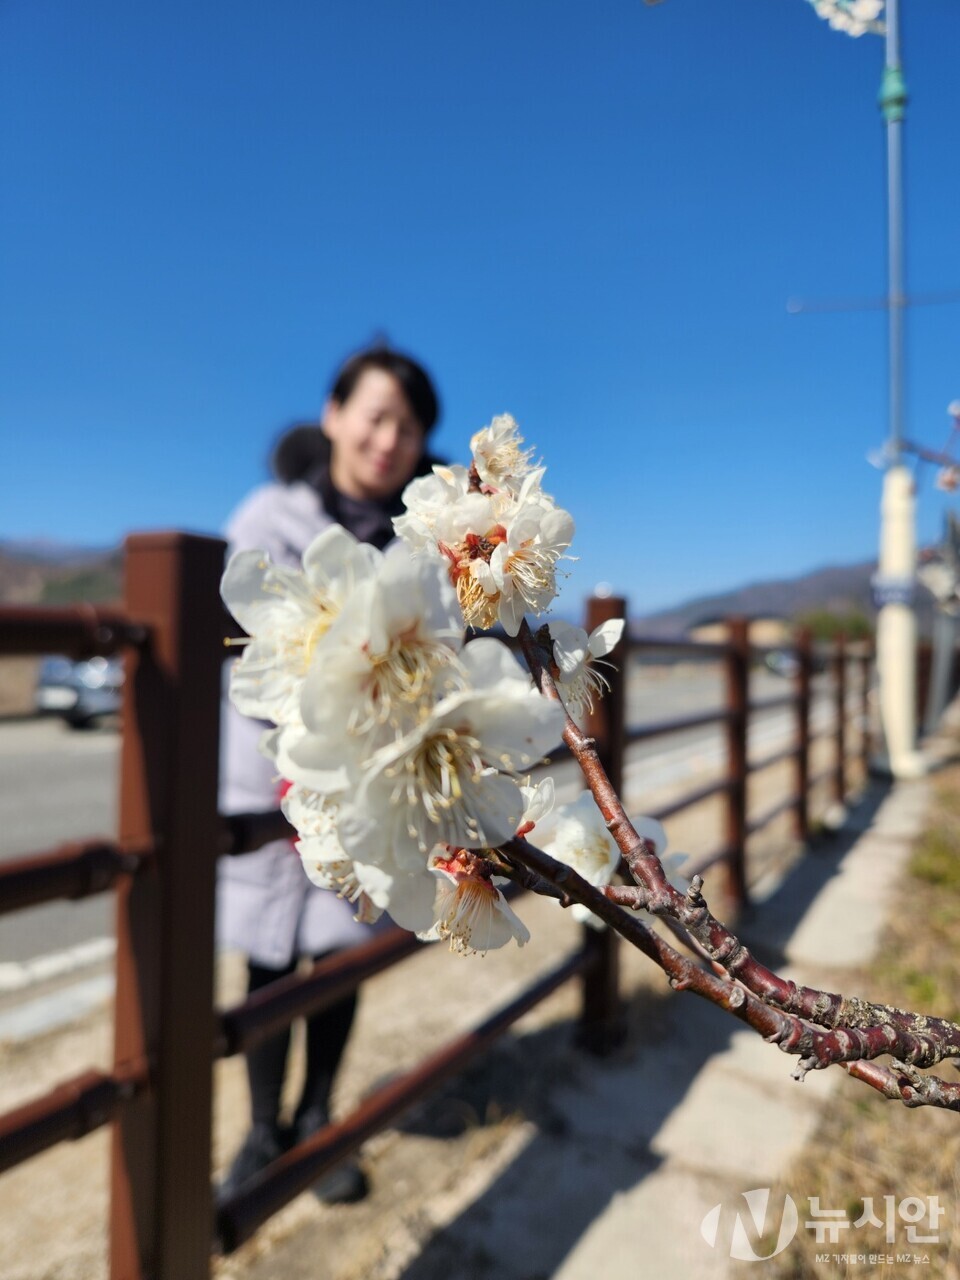 광양 매화 축제를 찾은 한 관광객이 거리에 핀 매화꽃과 함께 사진을 찍고 있다. [사진=뉴시안]